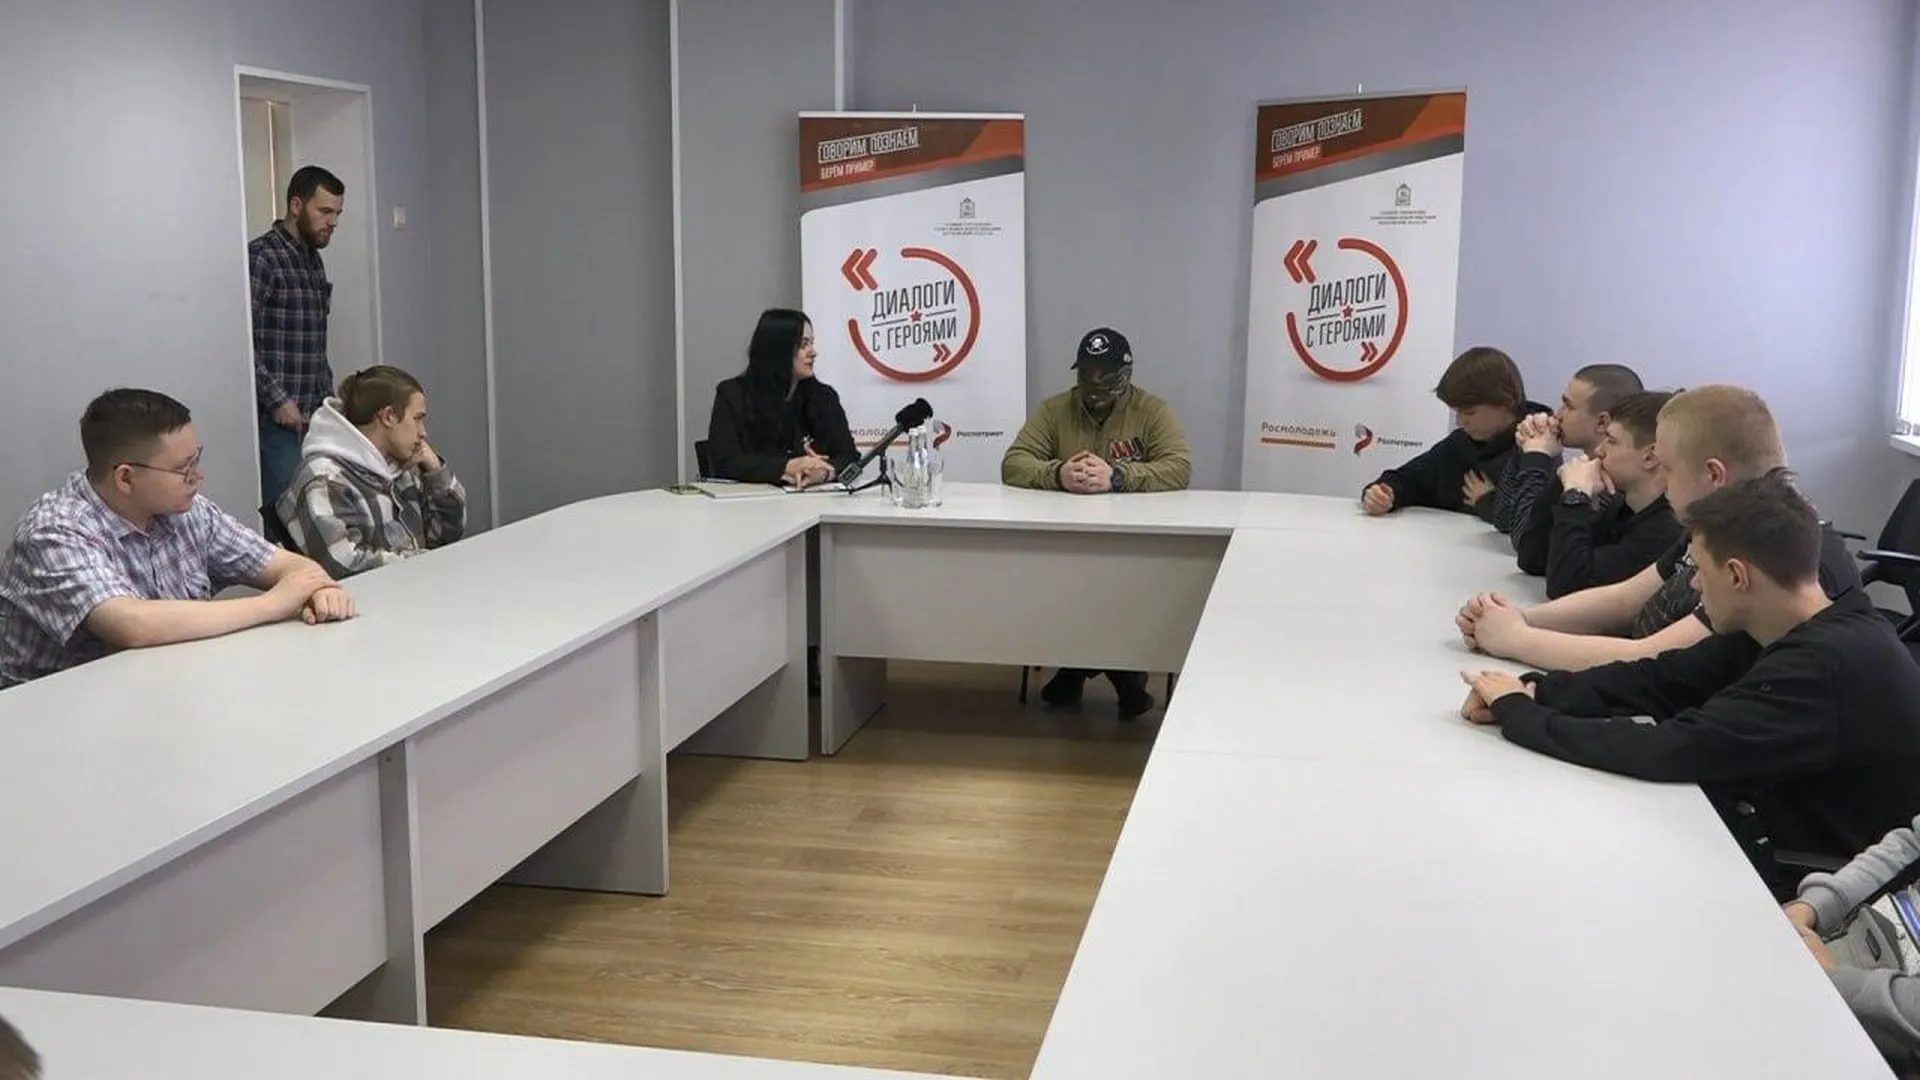 Участник СВО встретился с молодежью в рамках проекта «Диалоги с героями» в Ногинске